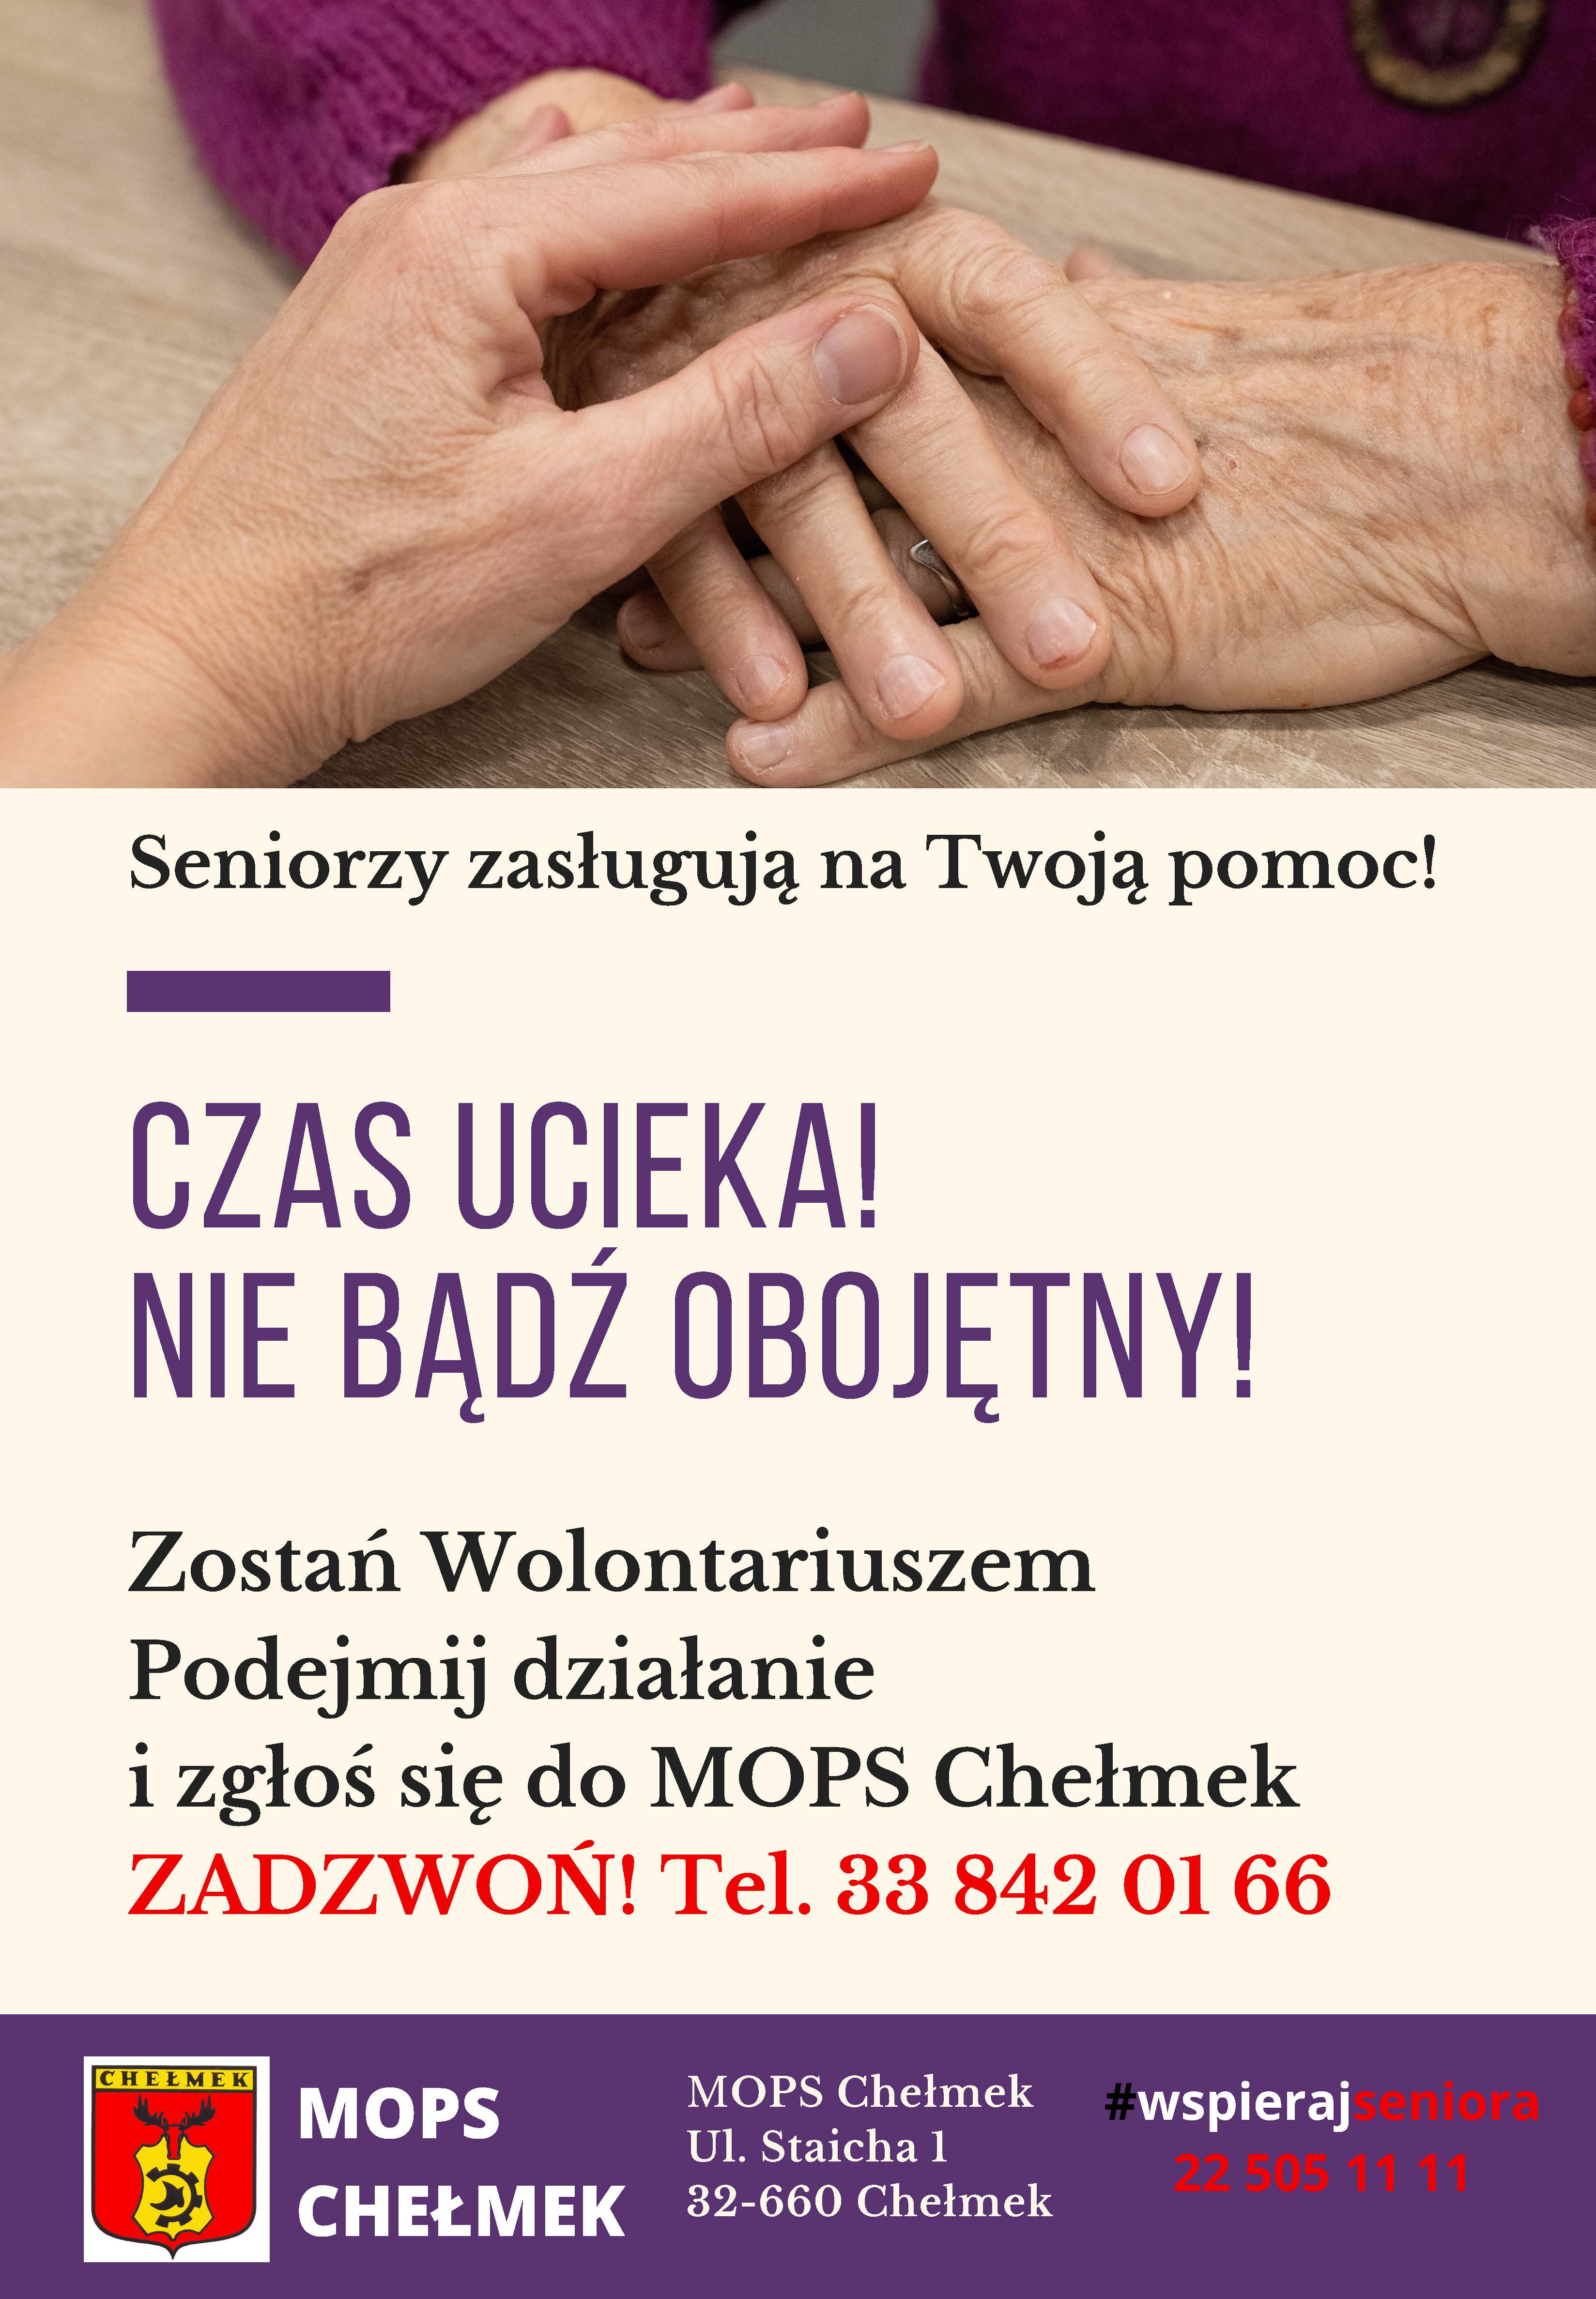 Ulotka informacyjna "Zostań Wolontariuszem" - zgłoś się do MOPS w Chełmku telefon 33 842 01 66 - dłoń młodszej osoby położona na rękach seniora.